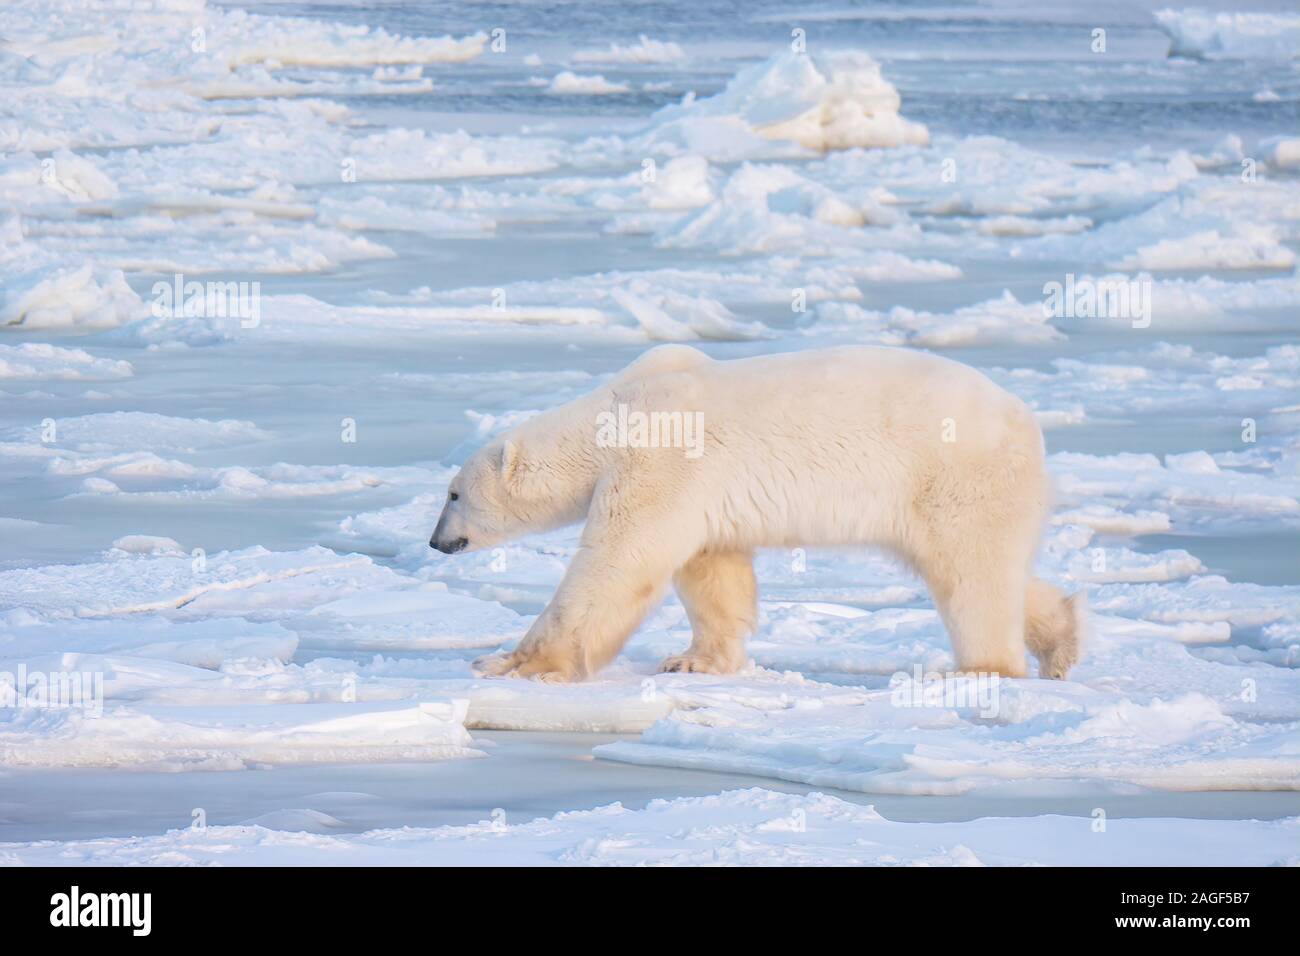 Un inverno di scena mostrando una fame maschio adulto orso polare alla ricerca di cibo mentre si cammina sul ghiaccio sottile vicino all aperto, ma non gelate acqua nella Baia di Hudson, Canada. Foto Stock